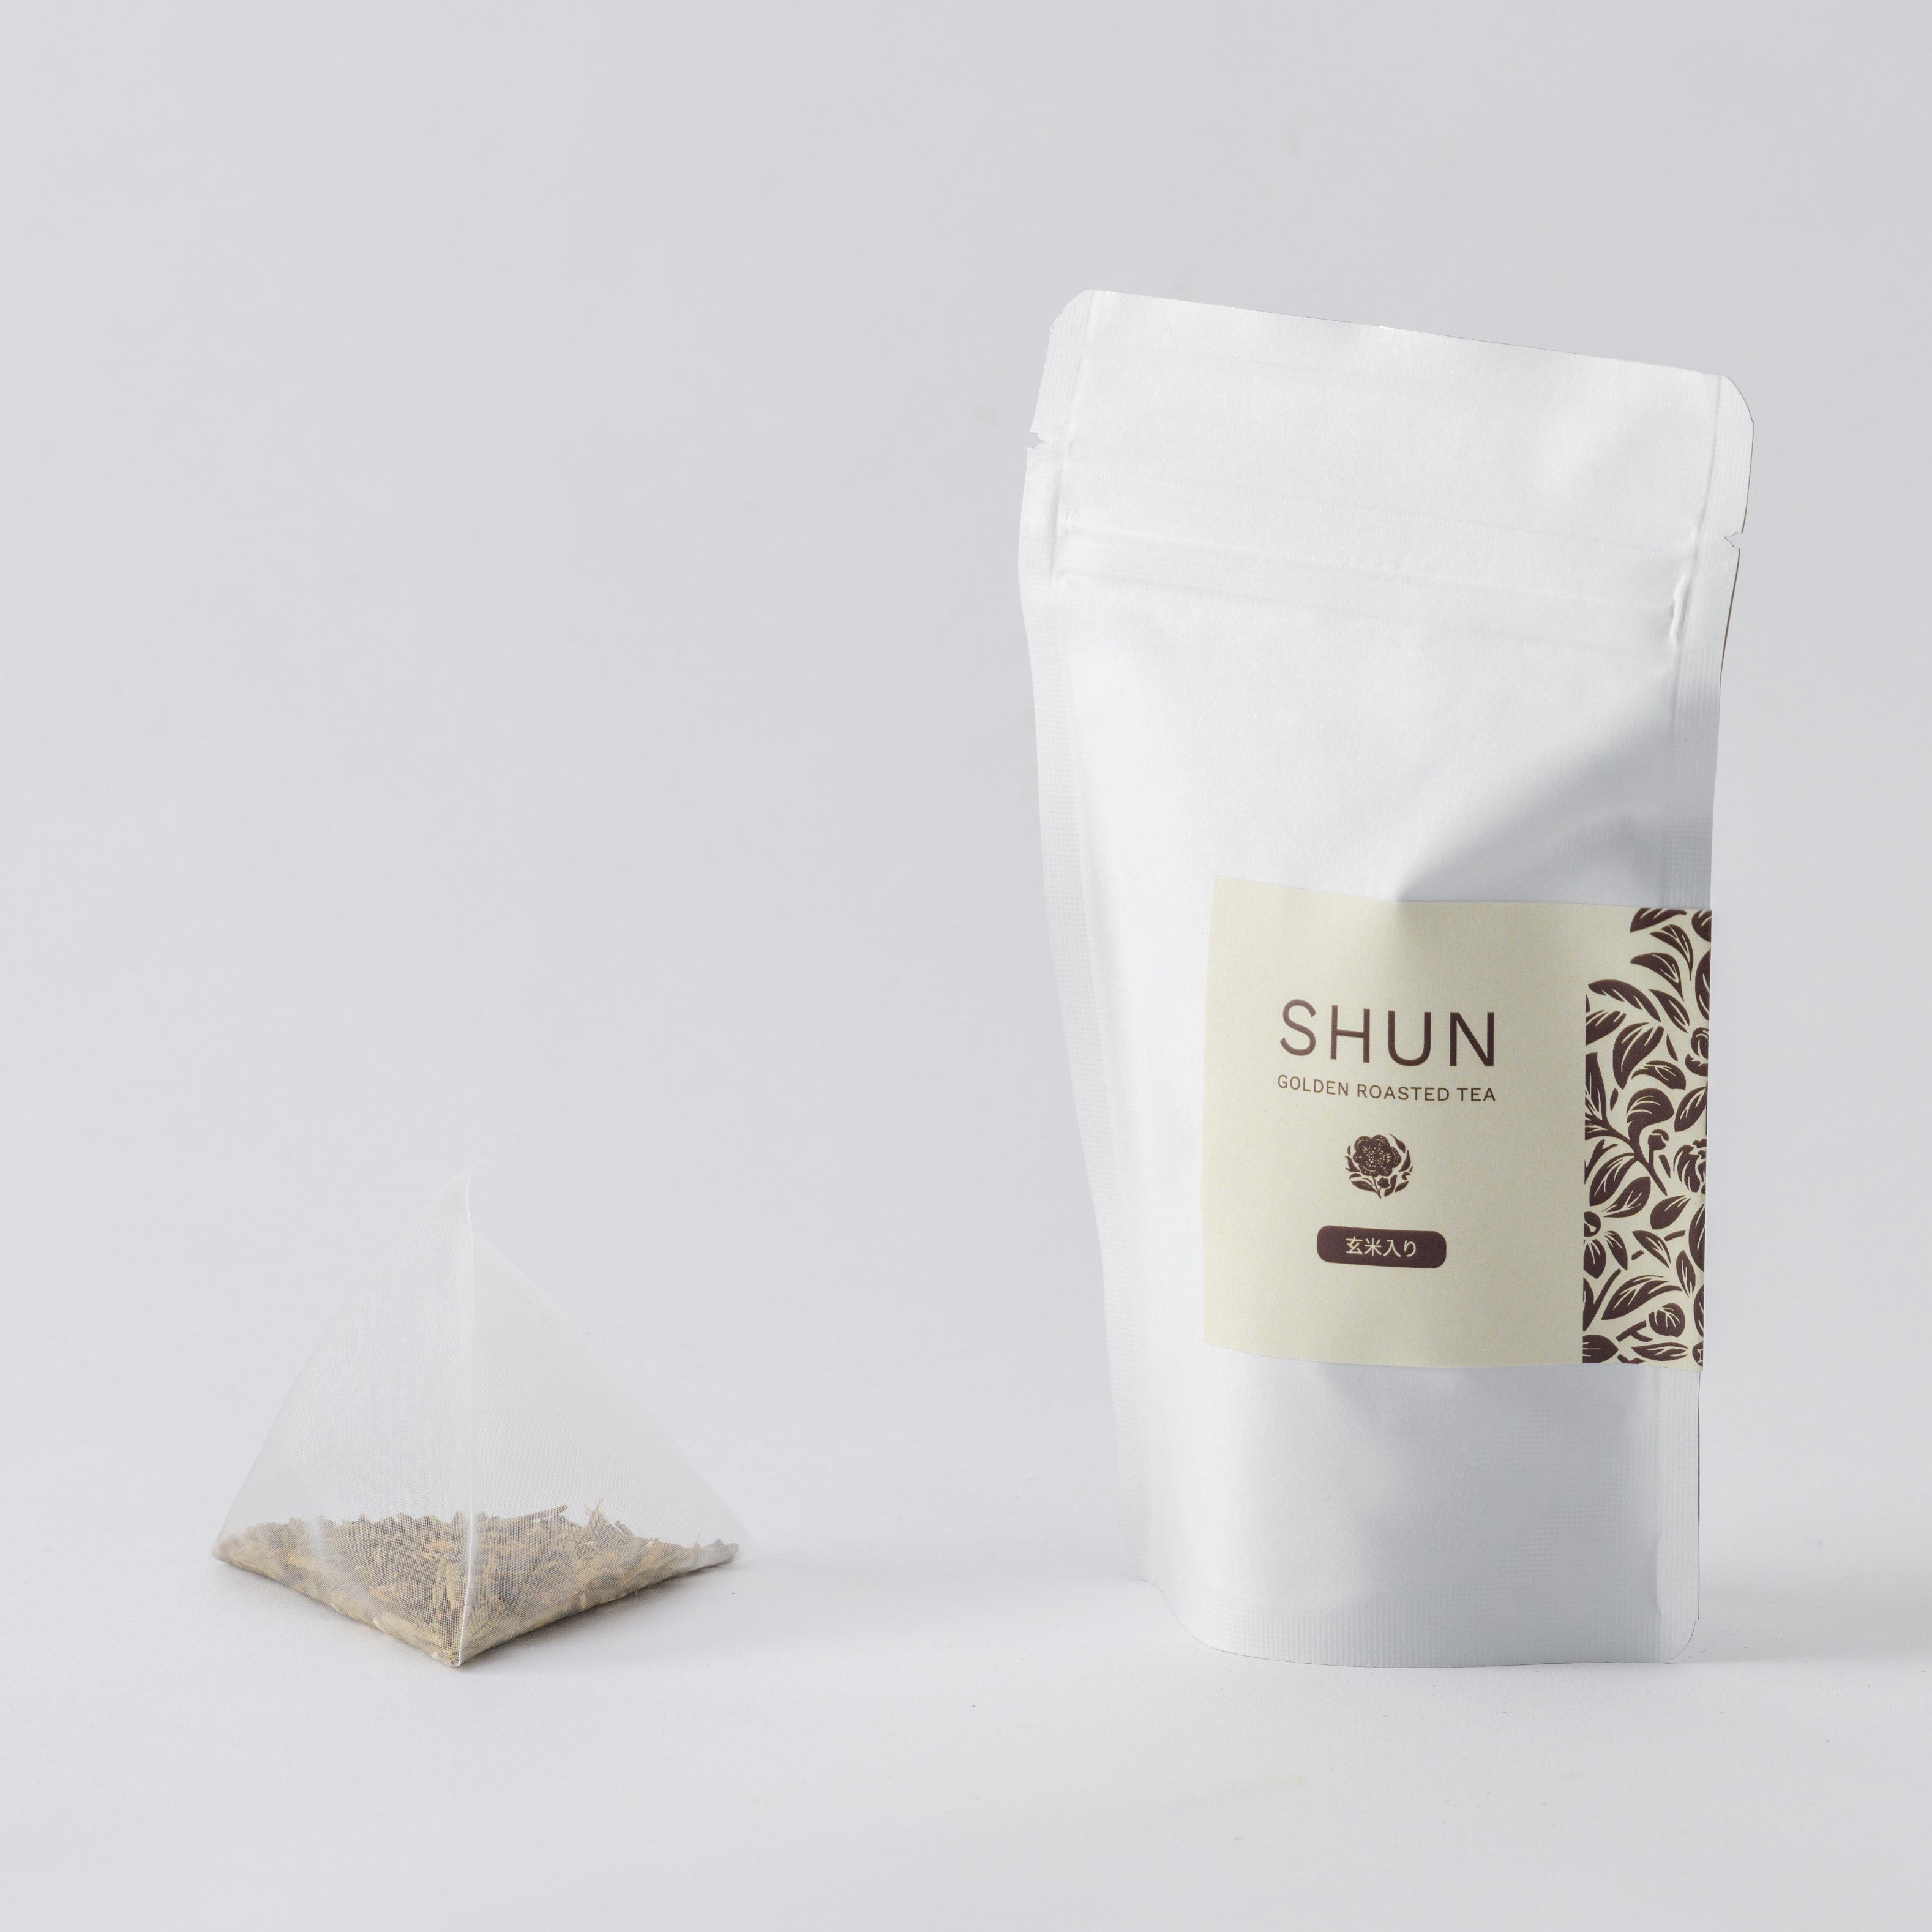 金棒茶「SHUN - 玄米ブレンド」 -袋-